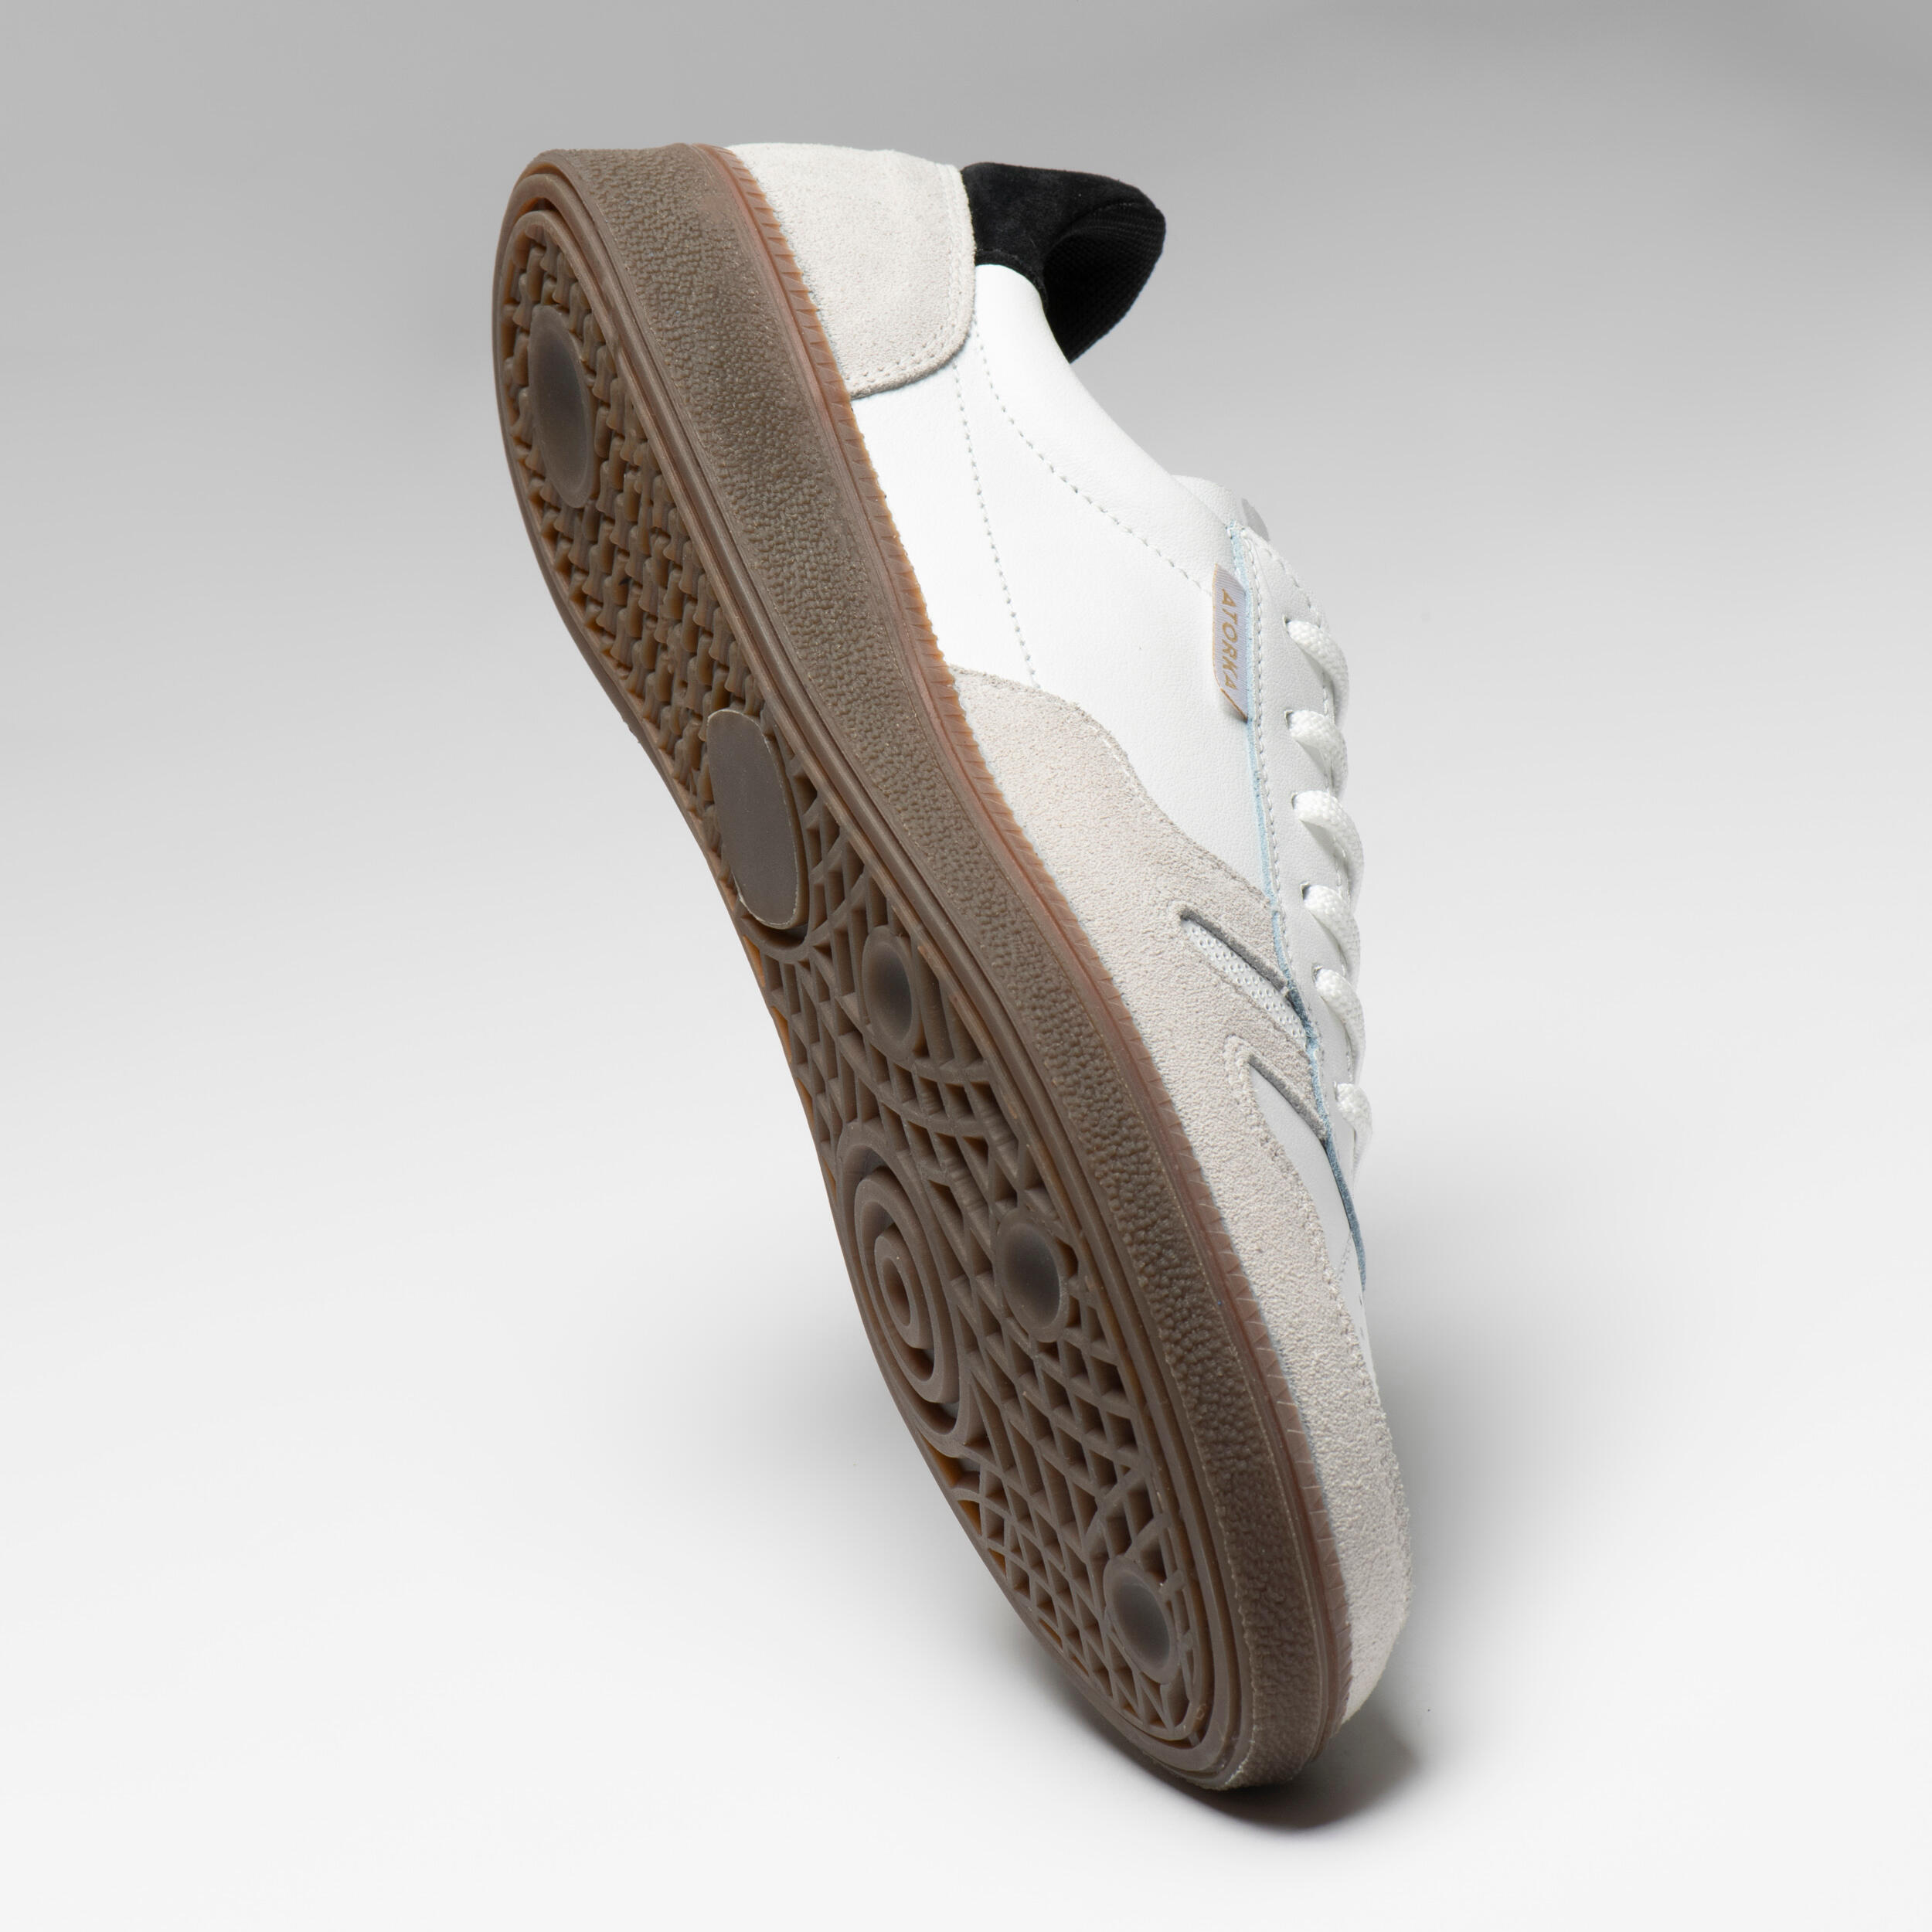 Men's/Women's Handball Goalkeeper Shoes GK500 - White/Black 10/19